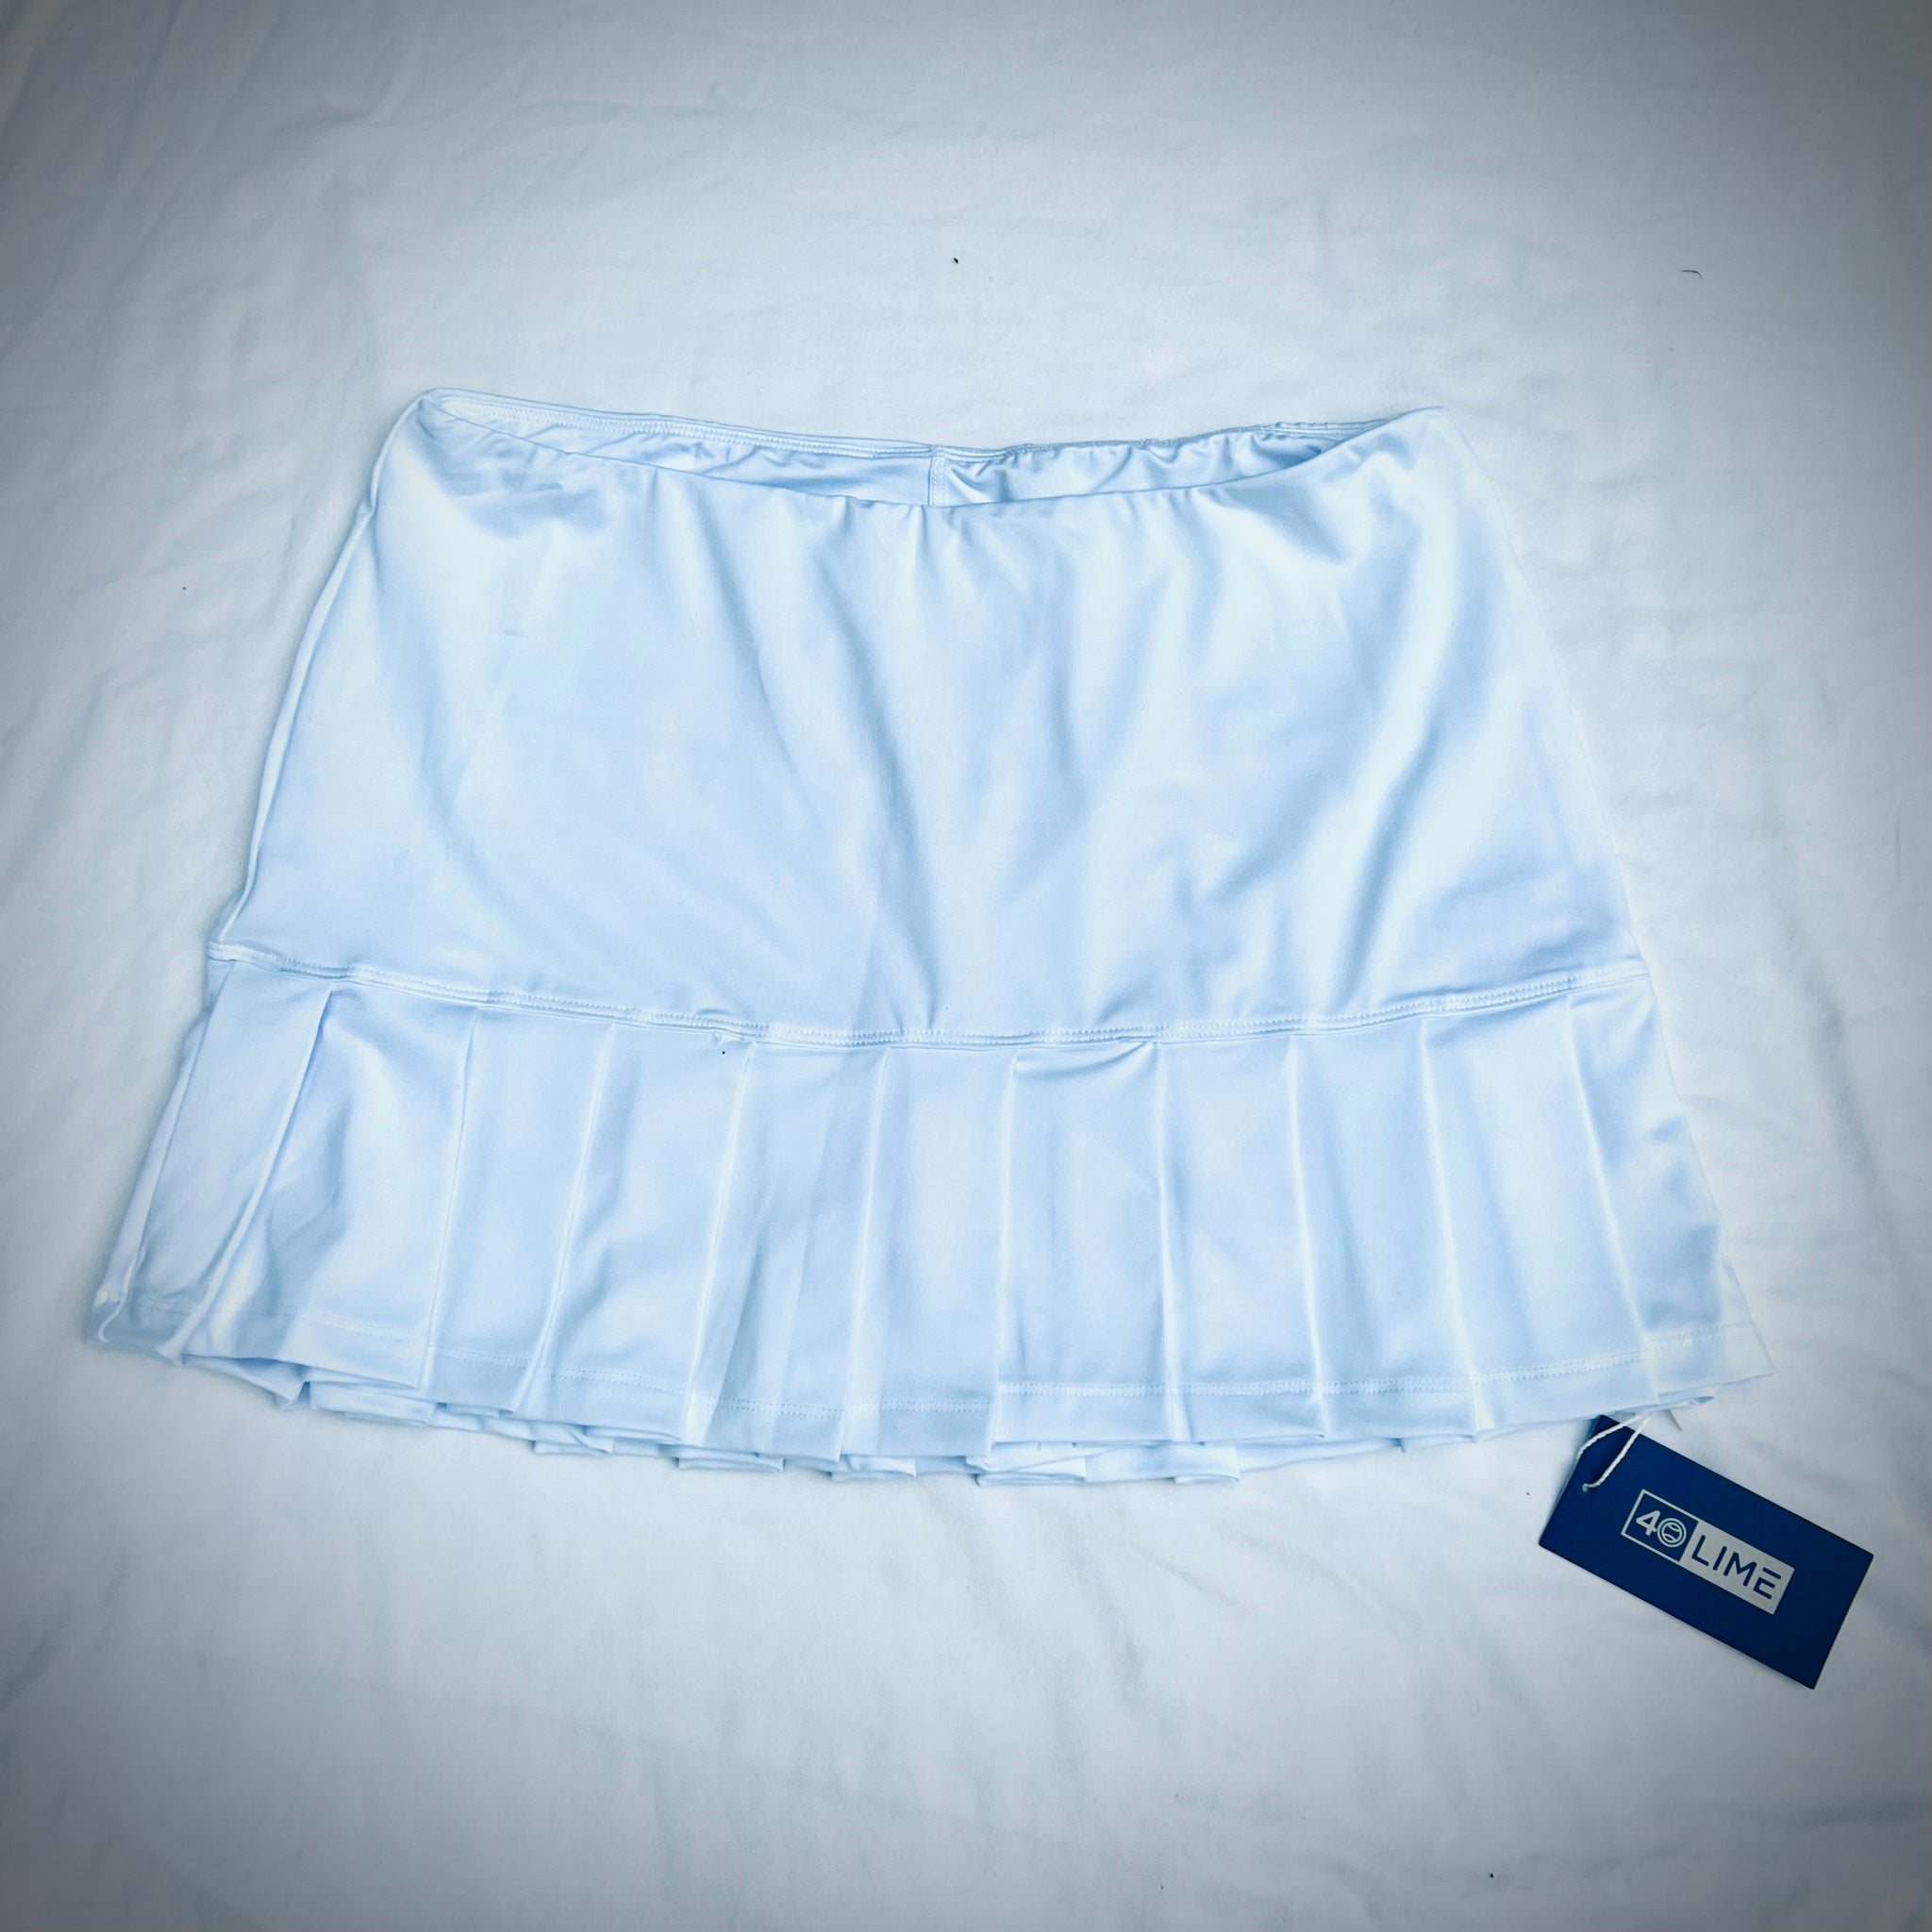 Naples Skirt